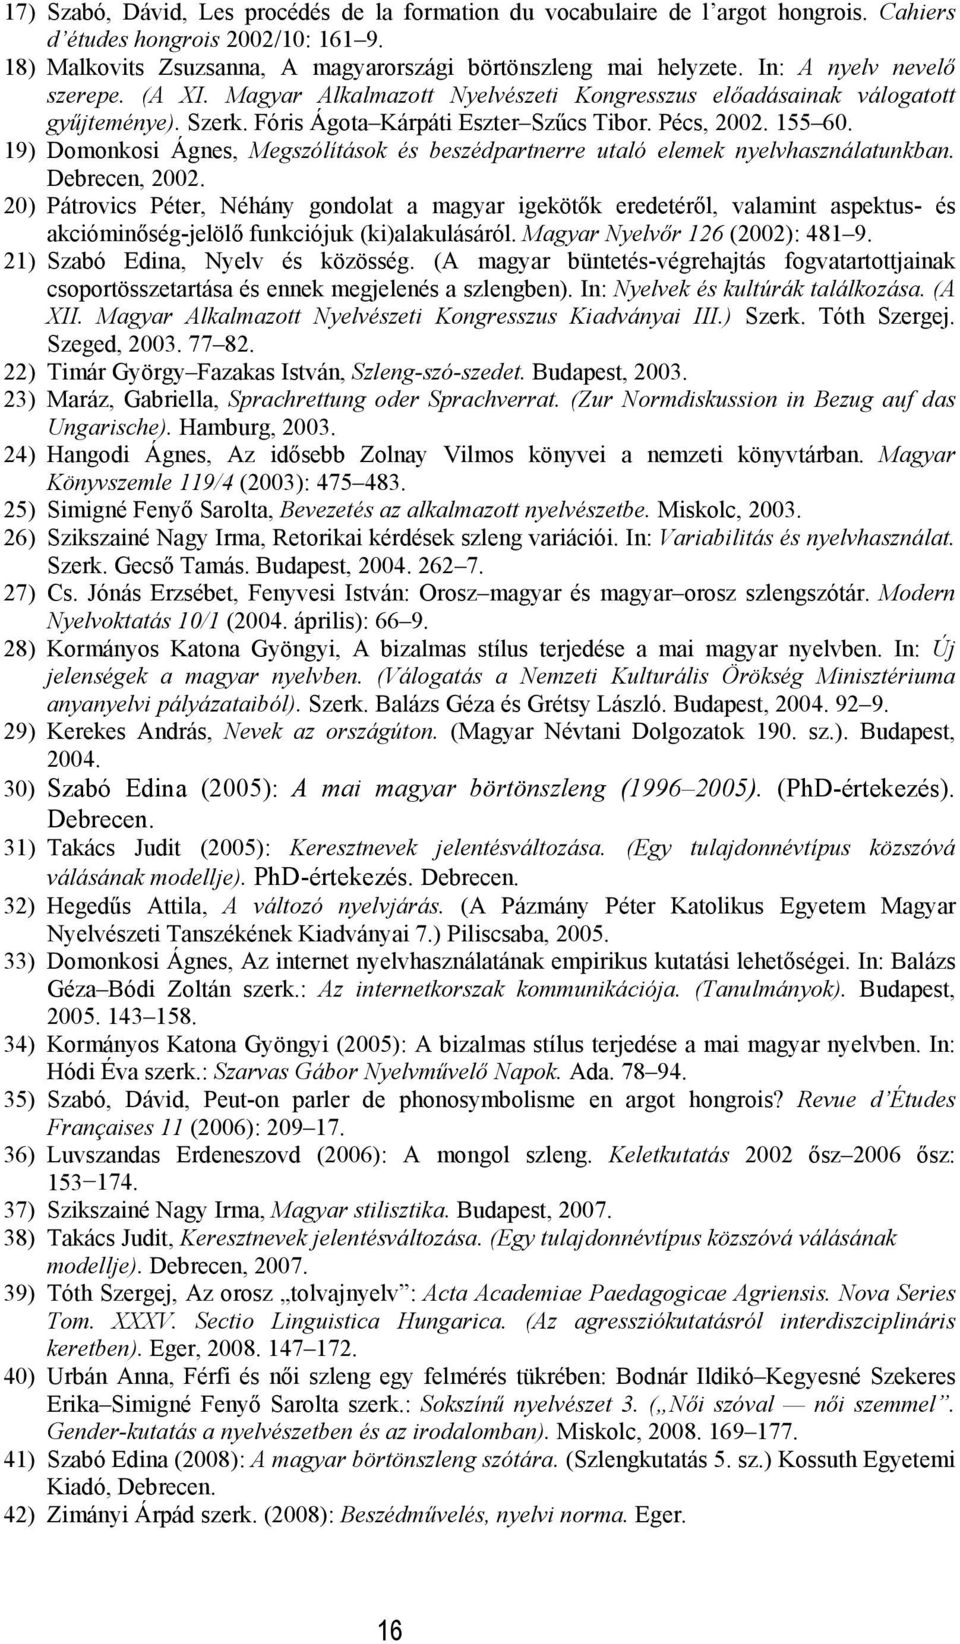 19) Domonkosi Ágnes, Megszólítások és beszédpartnerre utaló elemek nyelvhasználatunkban. Debrecen, 2002.